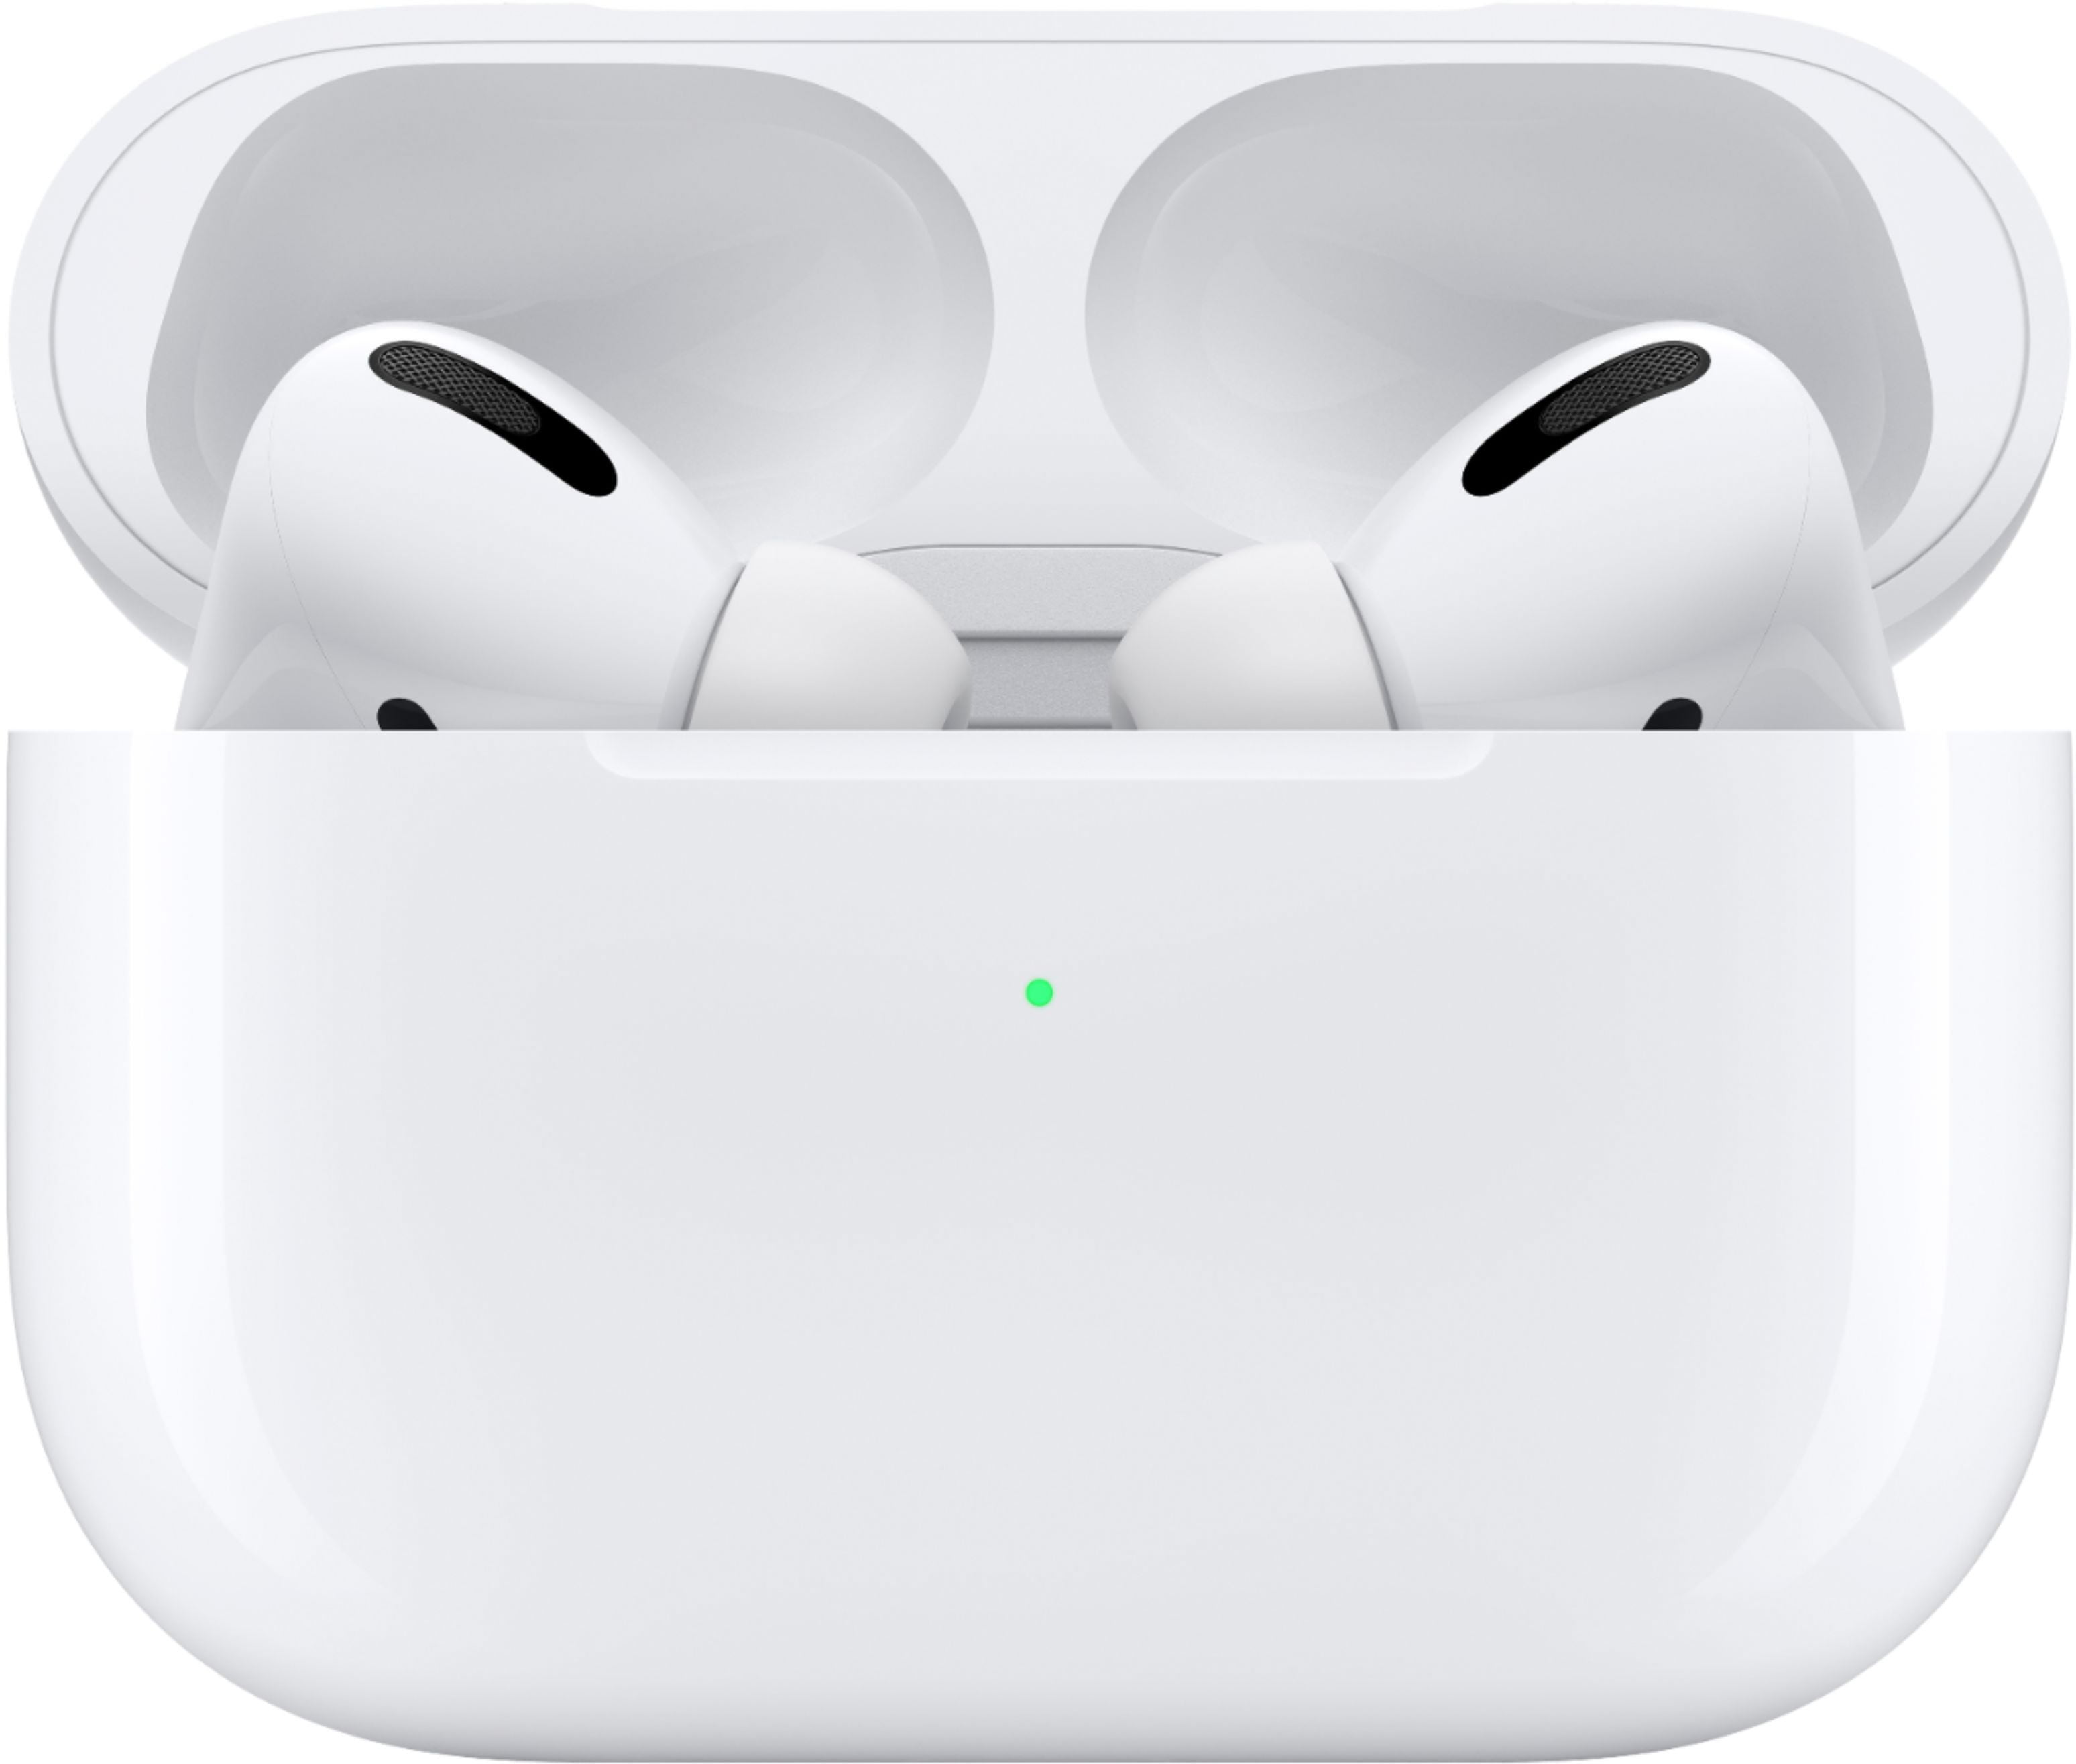 オーディオ機器 ヘッドフォン Apple AirPods Pro with Wireless Charging Case (1st Gen) (MWP22AM/A) Bundle  with Cable Ties + USB-C Charger + Cleaning Kit